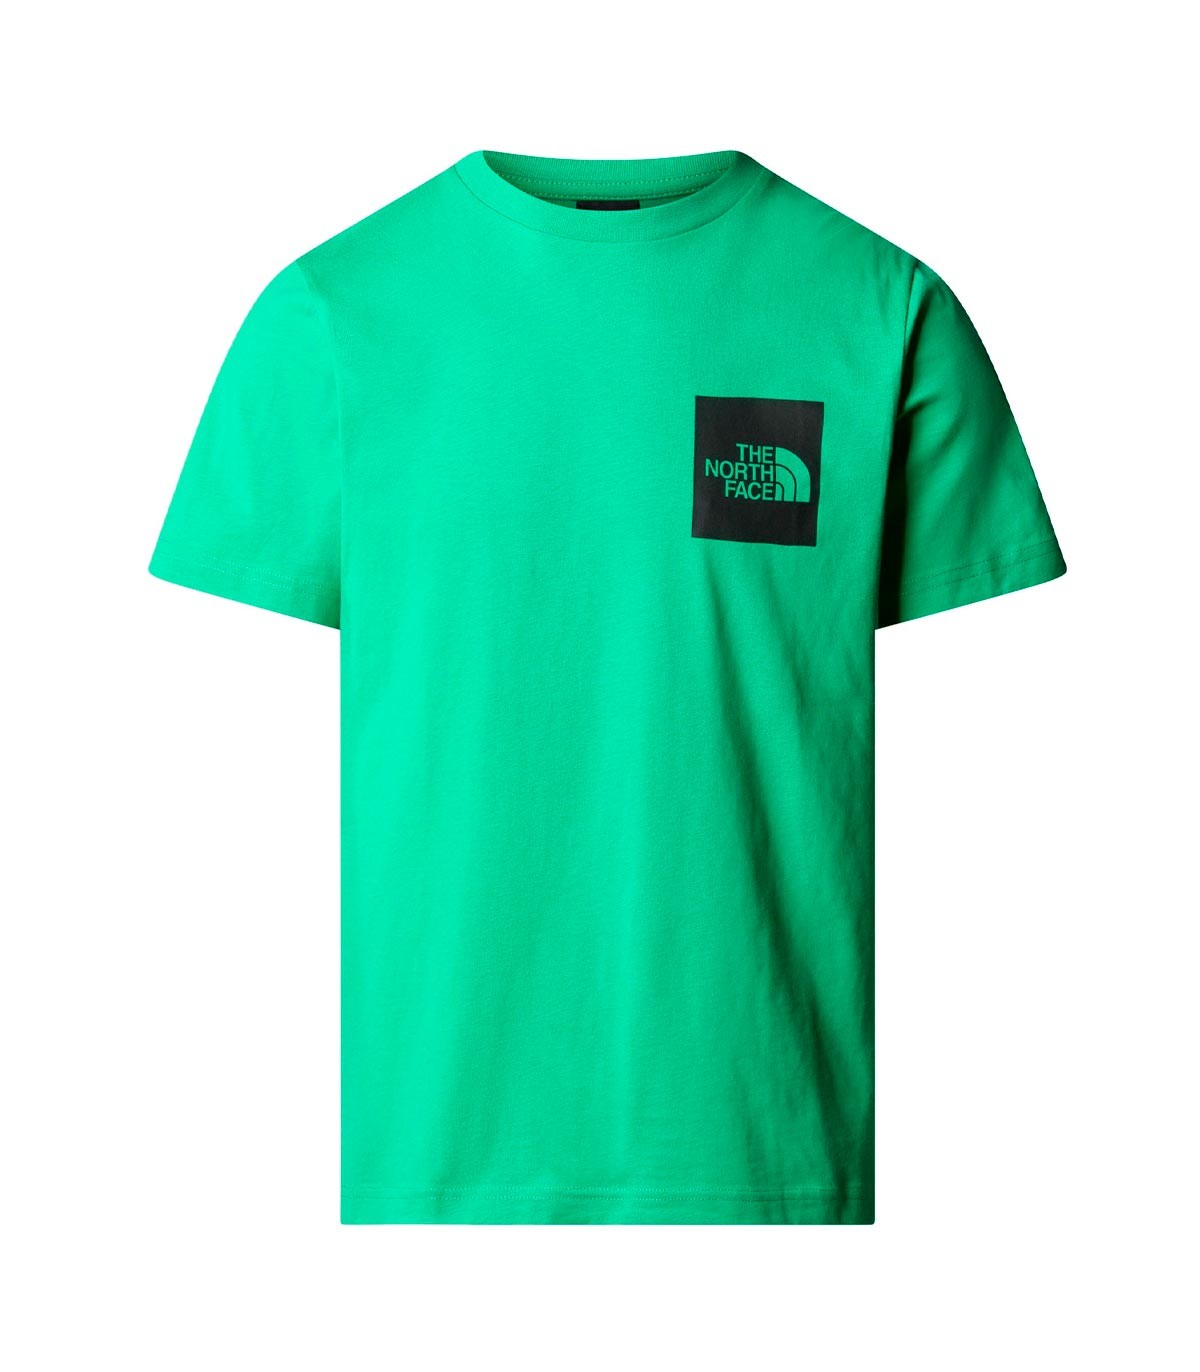 The North Face - Camiseta Box Logo - Verde